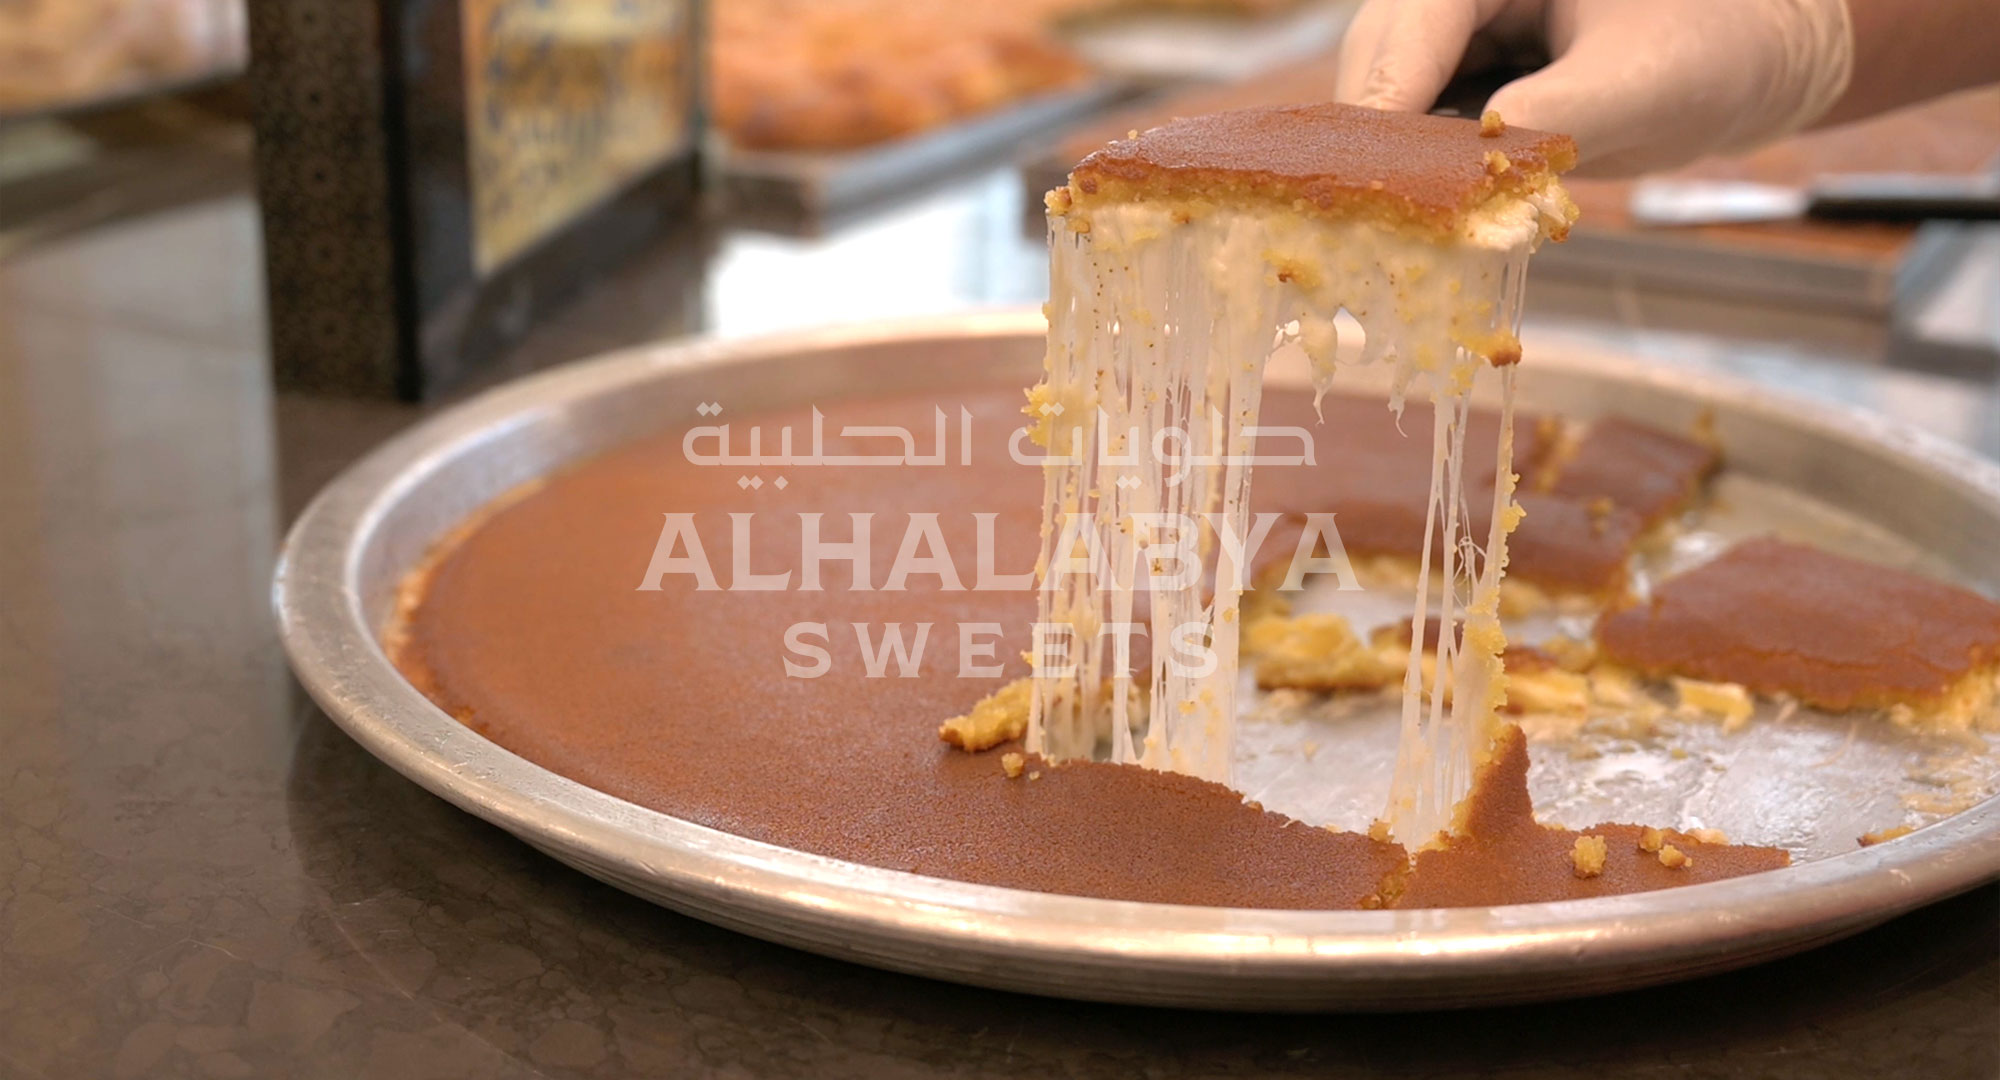 Visiting Al Halabya Sweets in Sharjah, UAE